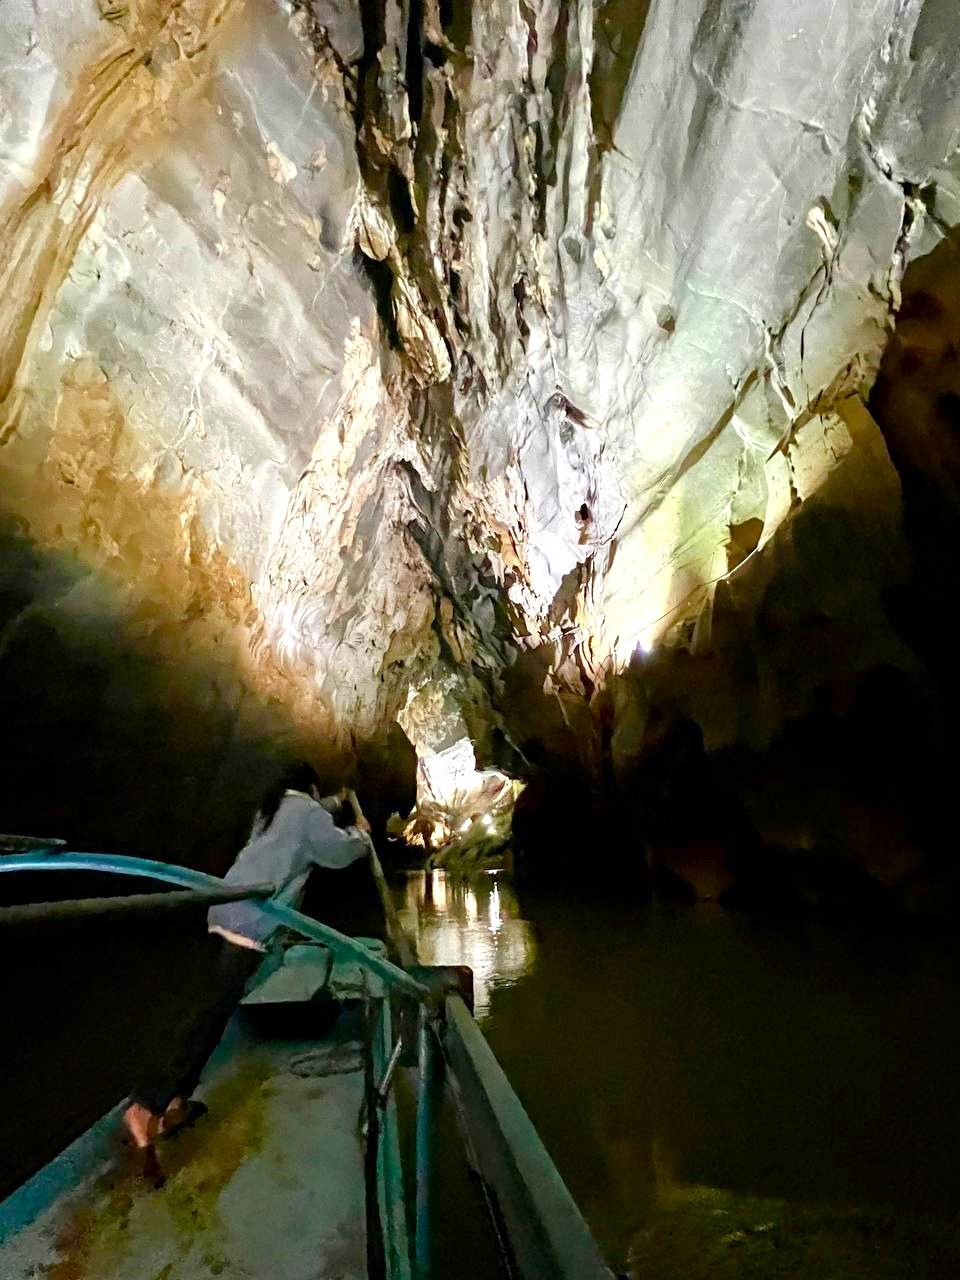 phong nha cave river crossing